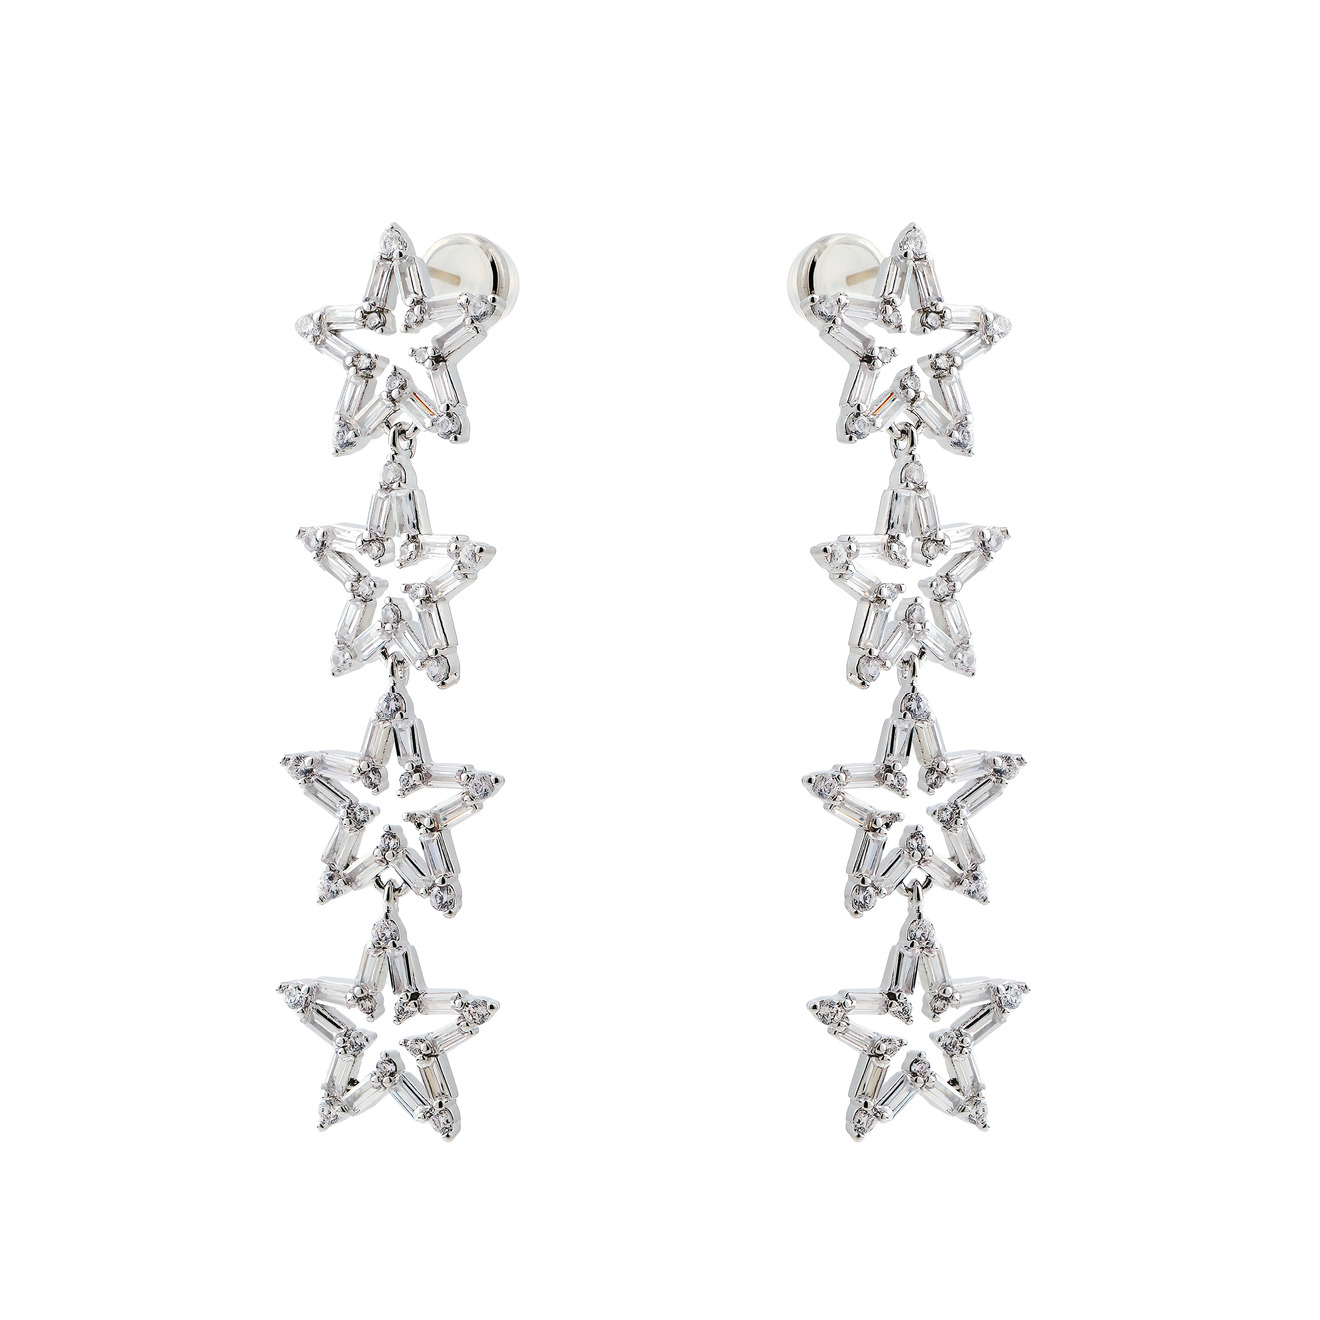 Herald Percy Серебристые длинные серьги с звездами с кристаллами skye серебряные серьги с белыми кристаллами звездами